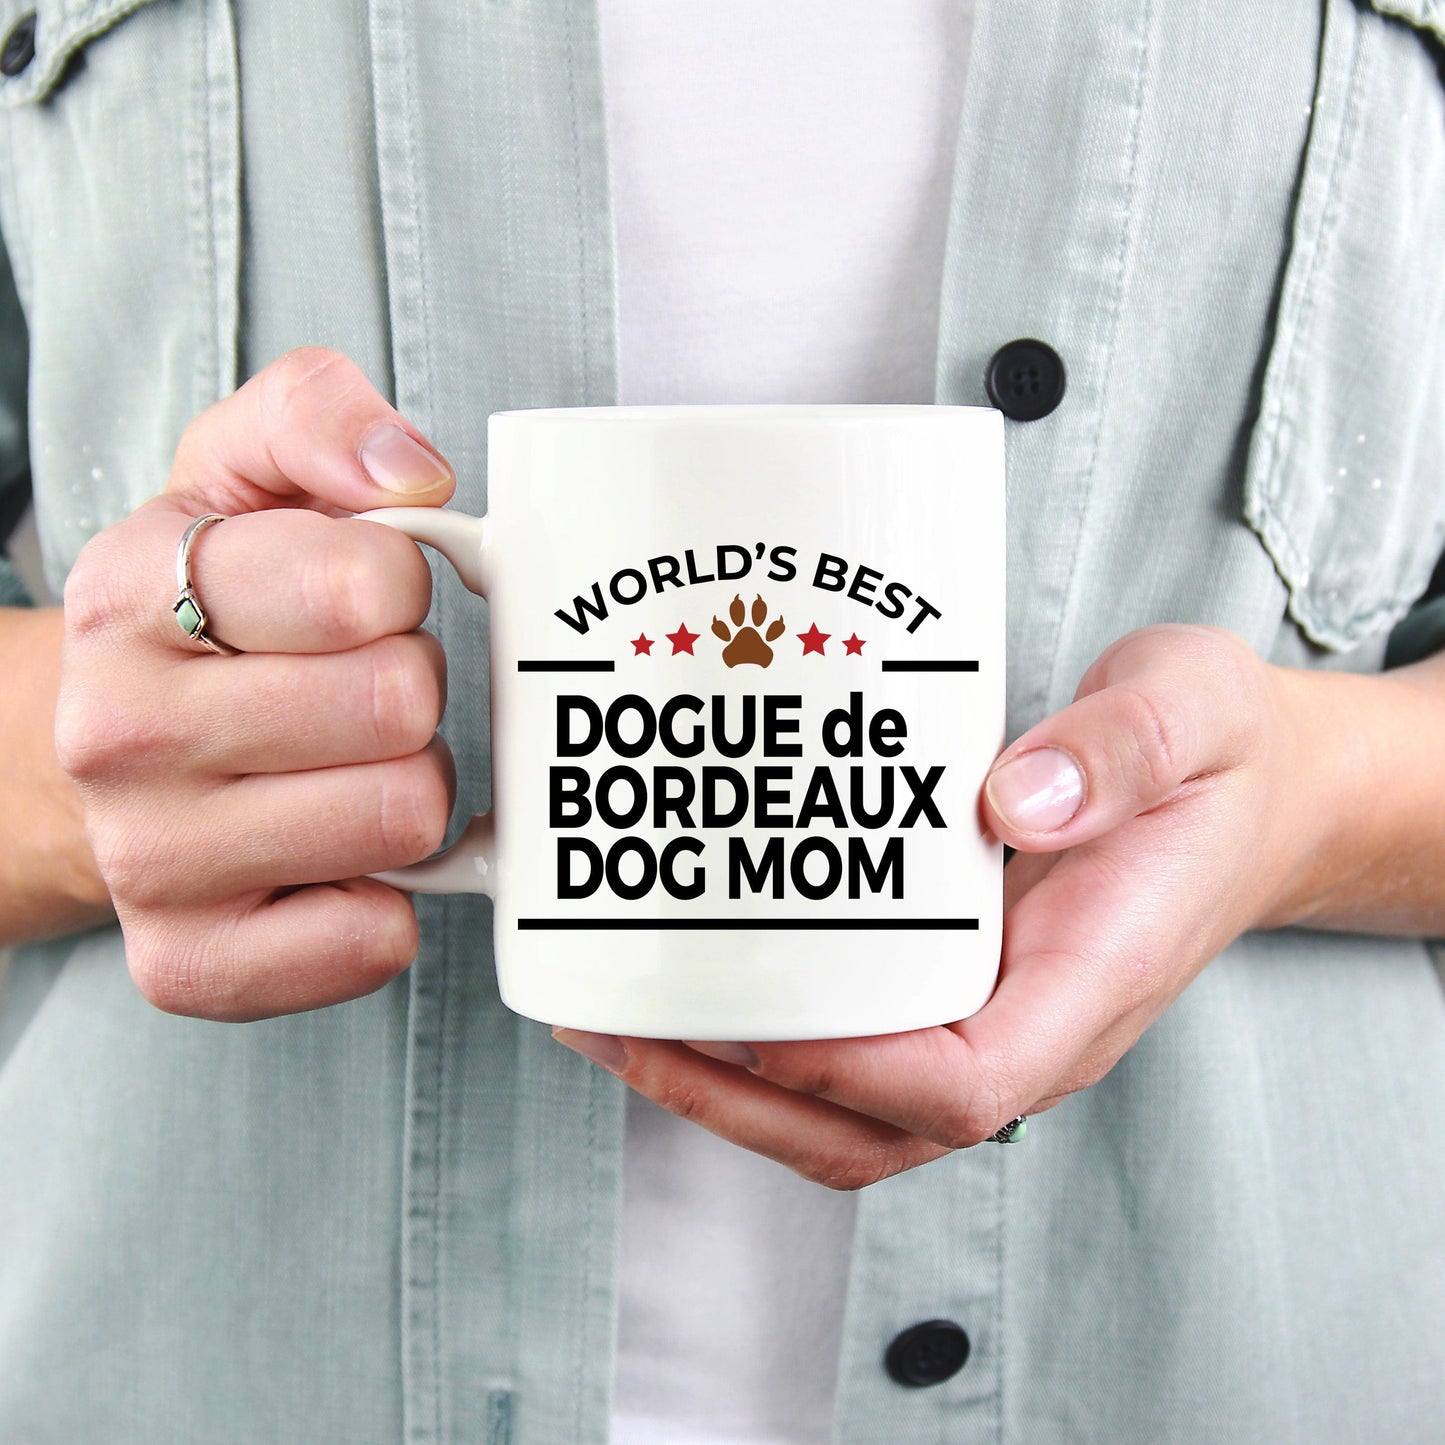 Dogue de Bordeaux Dog Mom Mug